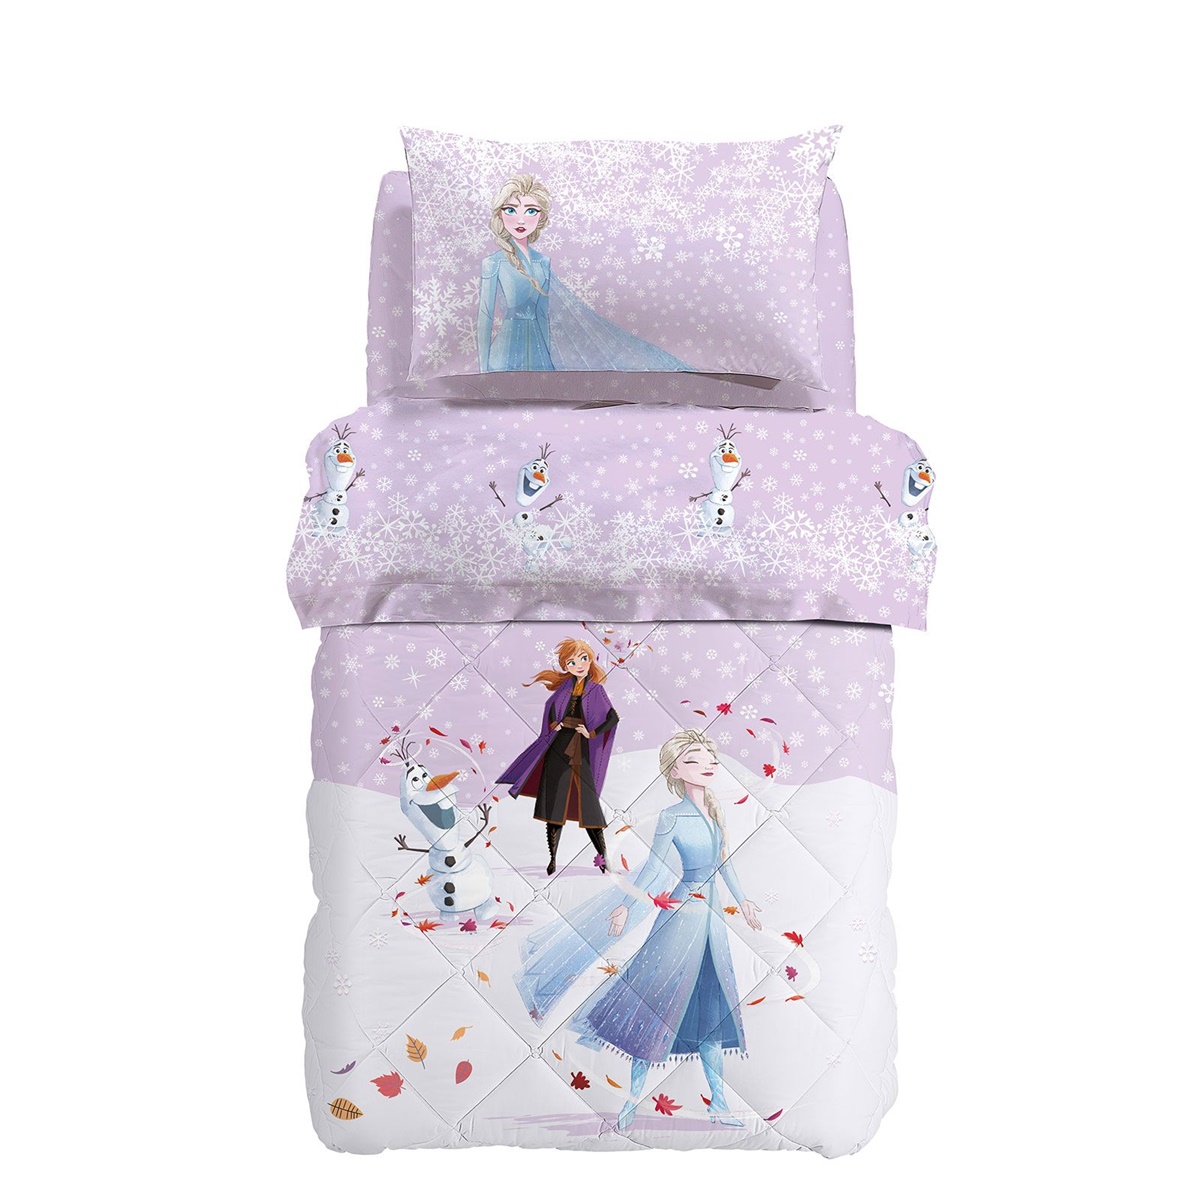 Trapuntino Caleffi Disney Frozen Elsa & Anna primaverile estivo 170x265 cm puro cotone rosa 